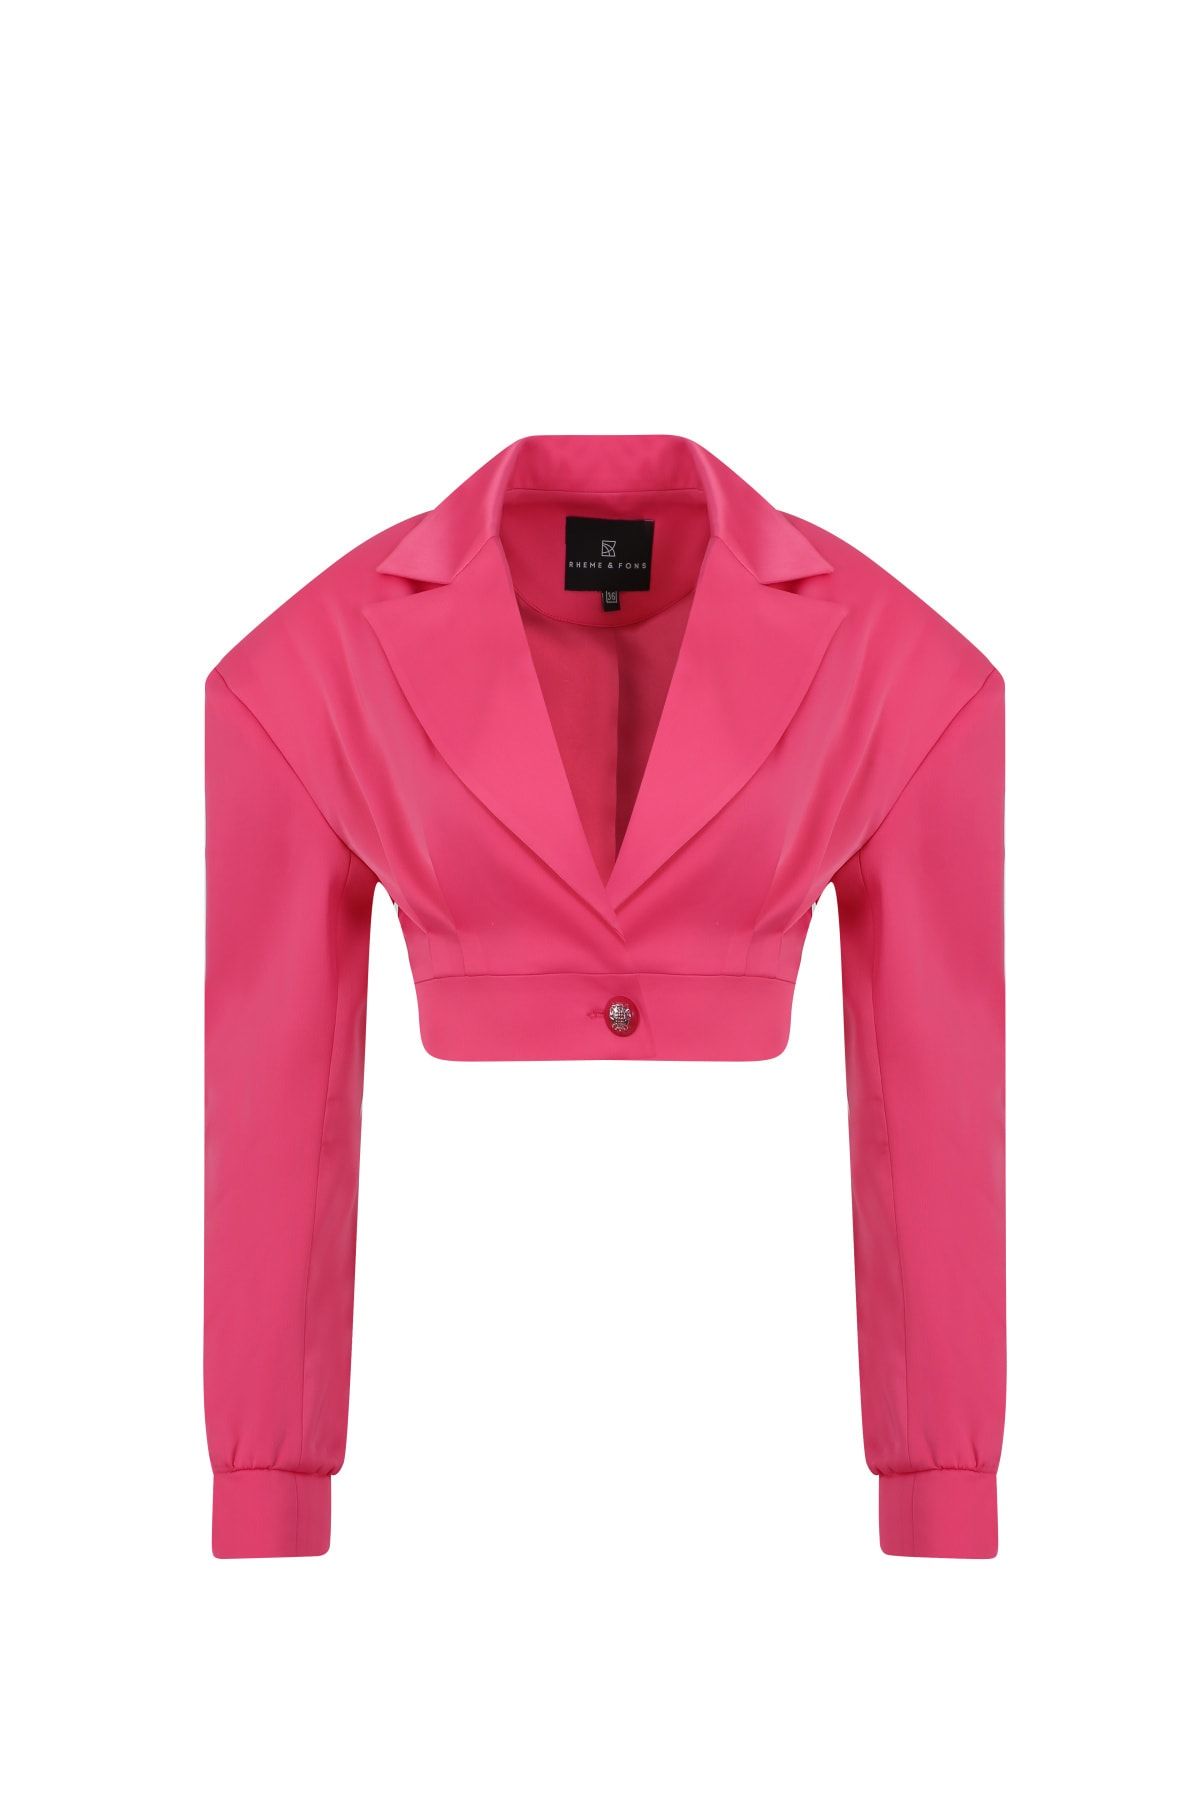 Rheme And Fons Özel Tasarım Couture El Işçiliği Düğme Detay Pembe Kadın Blazer Ceket